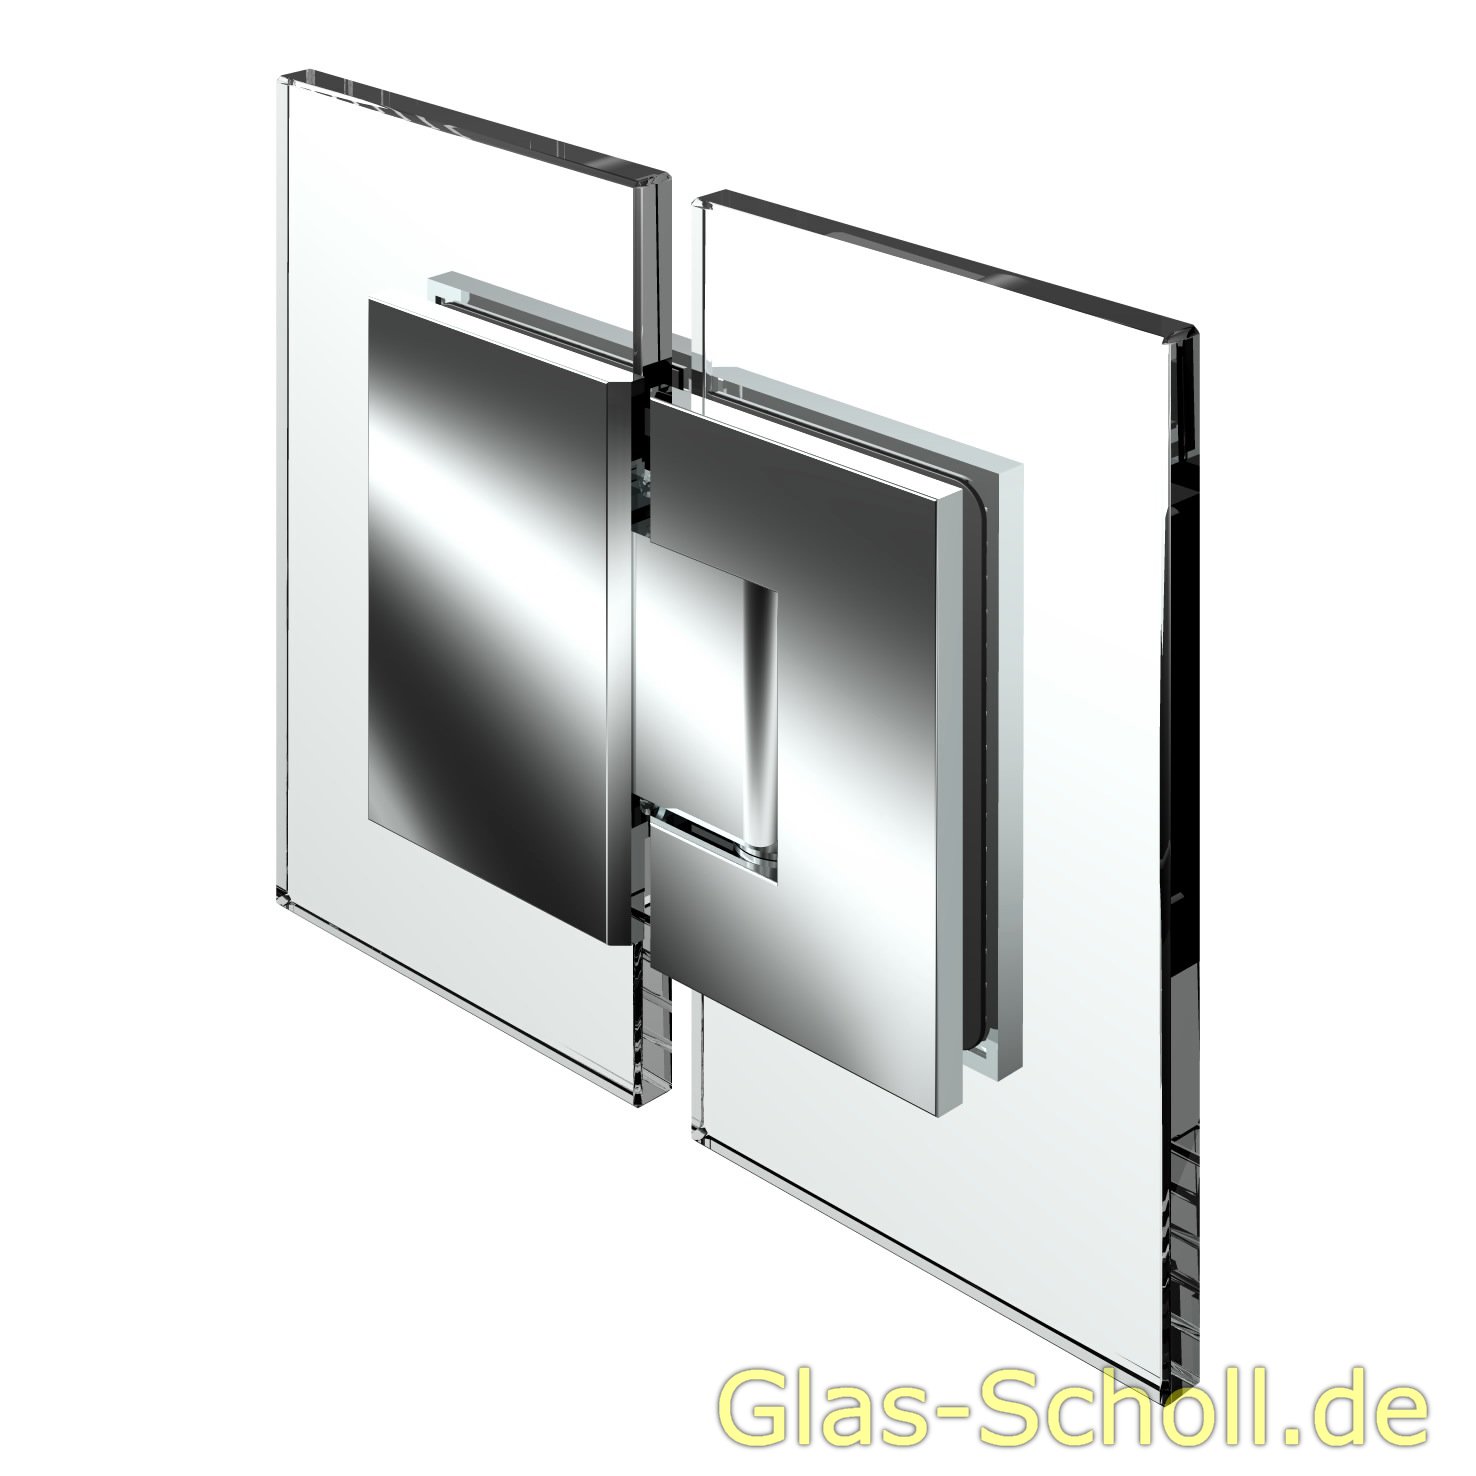 Glas Scholl Webshop | Modesta/Luno Duschpendeltürbeschlag Glas-Glas 180°  für 6-12 mm Glas glanzverchromt | Artikel rund ums Glas online kaufen